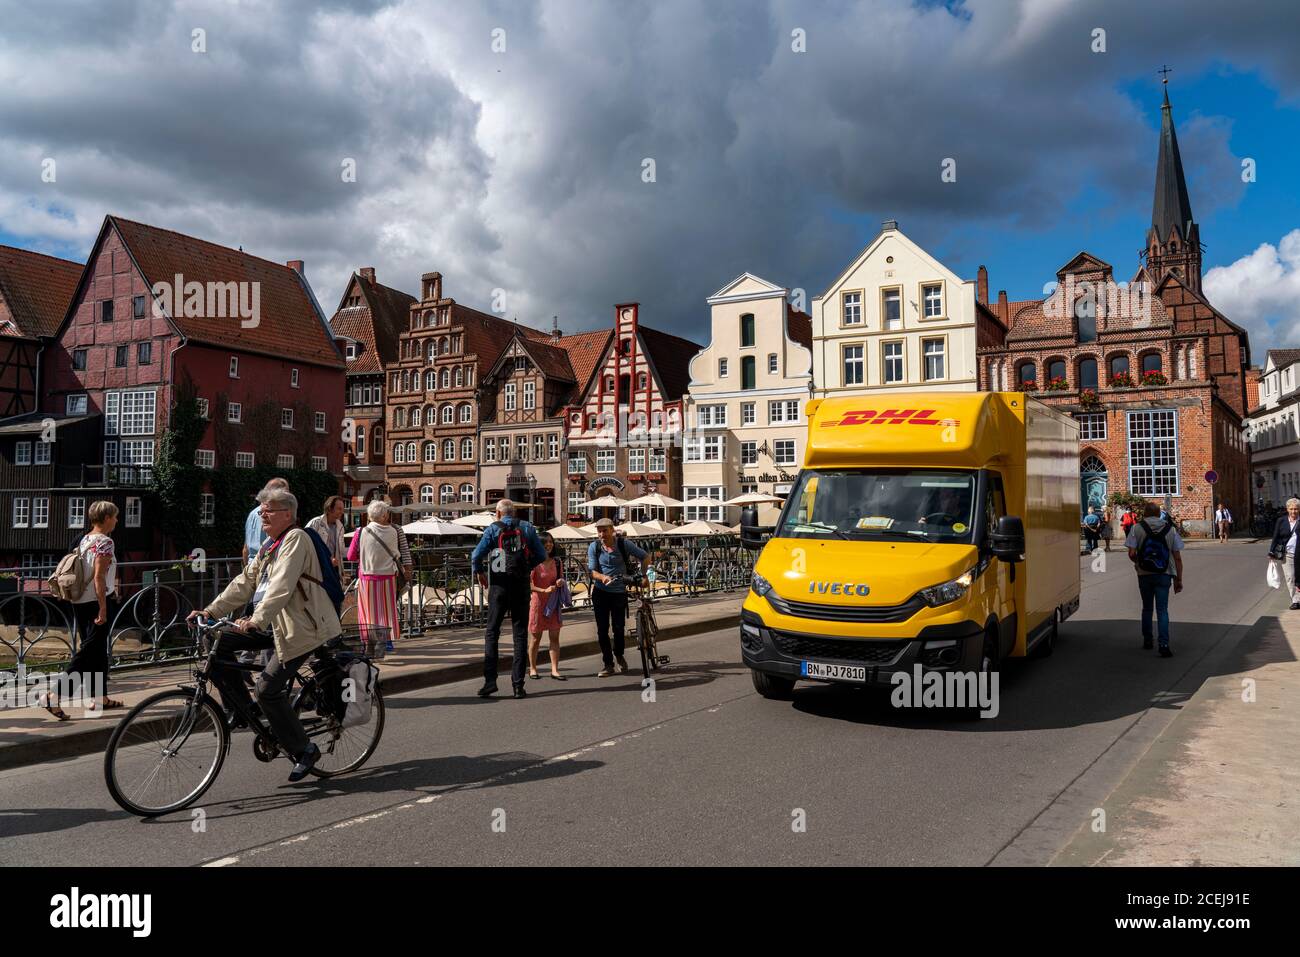 La città vecchia di Lüneburg, l'area di Stintmarkt sul fiume Ilmenau, il quartiere storico del porto, molti ristoranti, pub, caffè, DHL Paketdienst Fahrzeug, Low Foto Stock